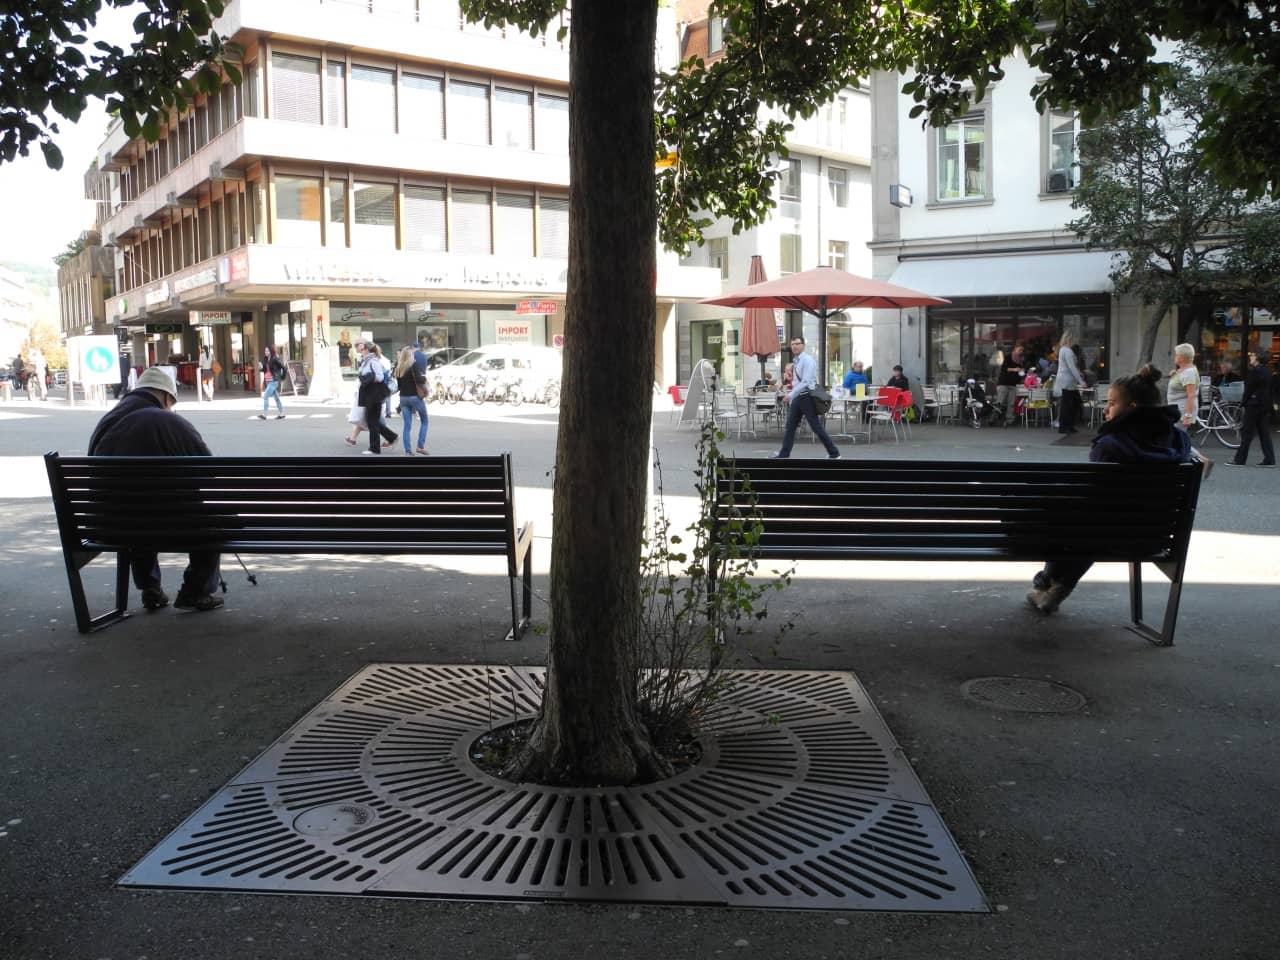 Zwei Personen sitzen auf Bänken im Schatten eines Baumes.